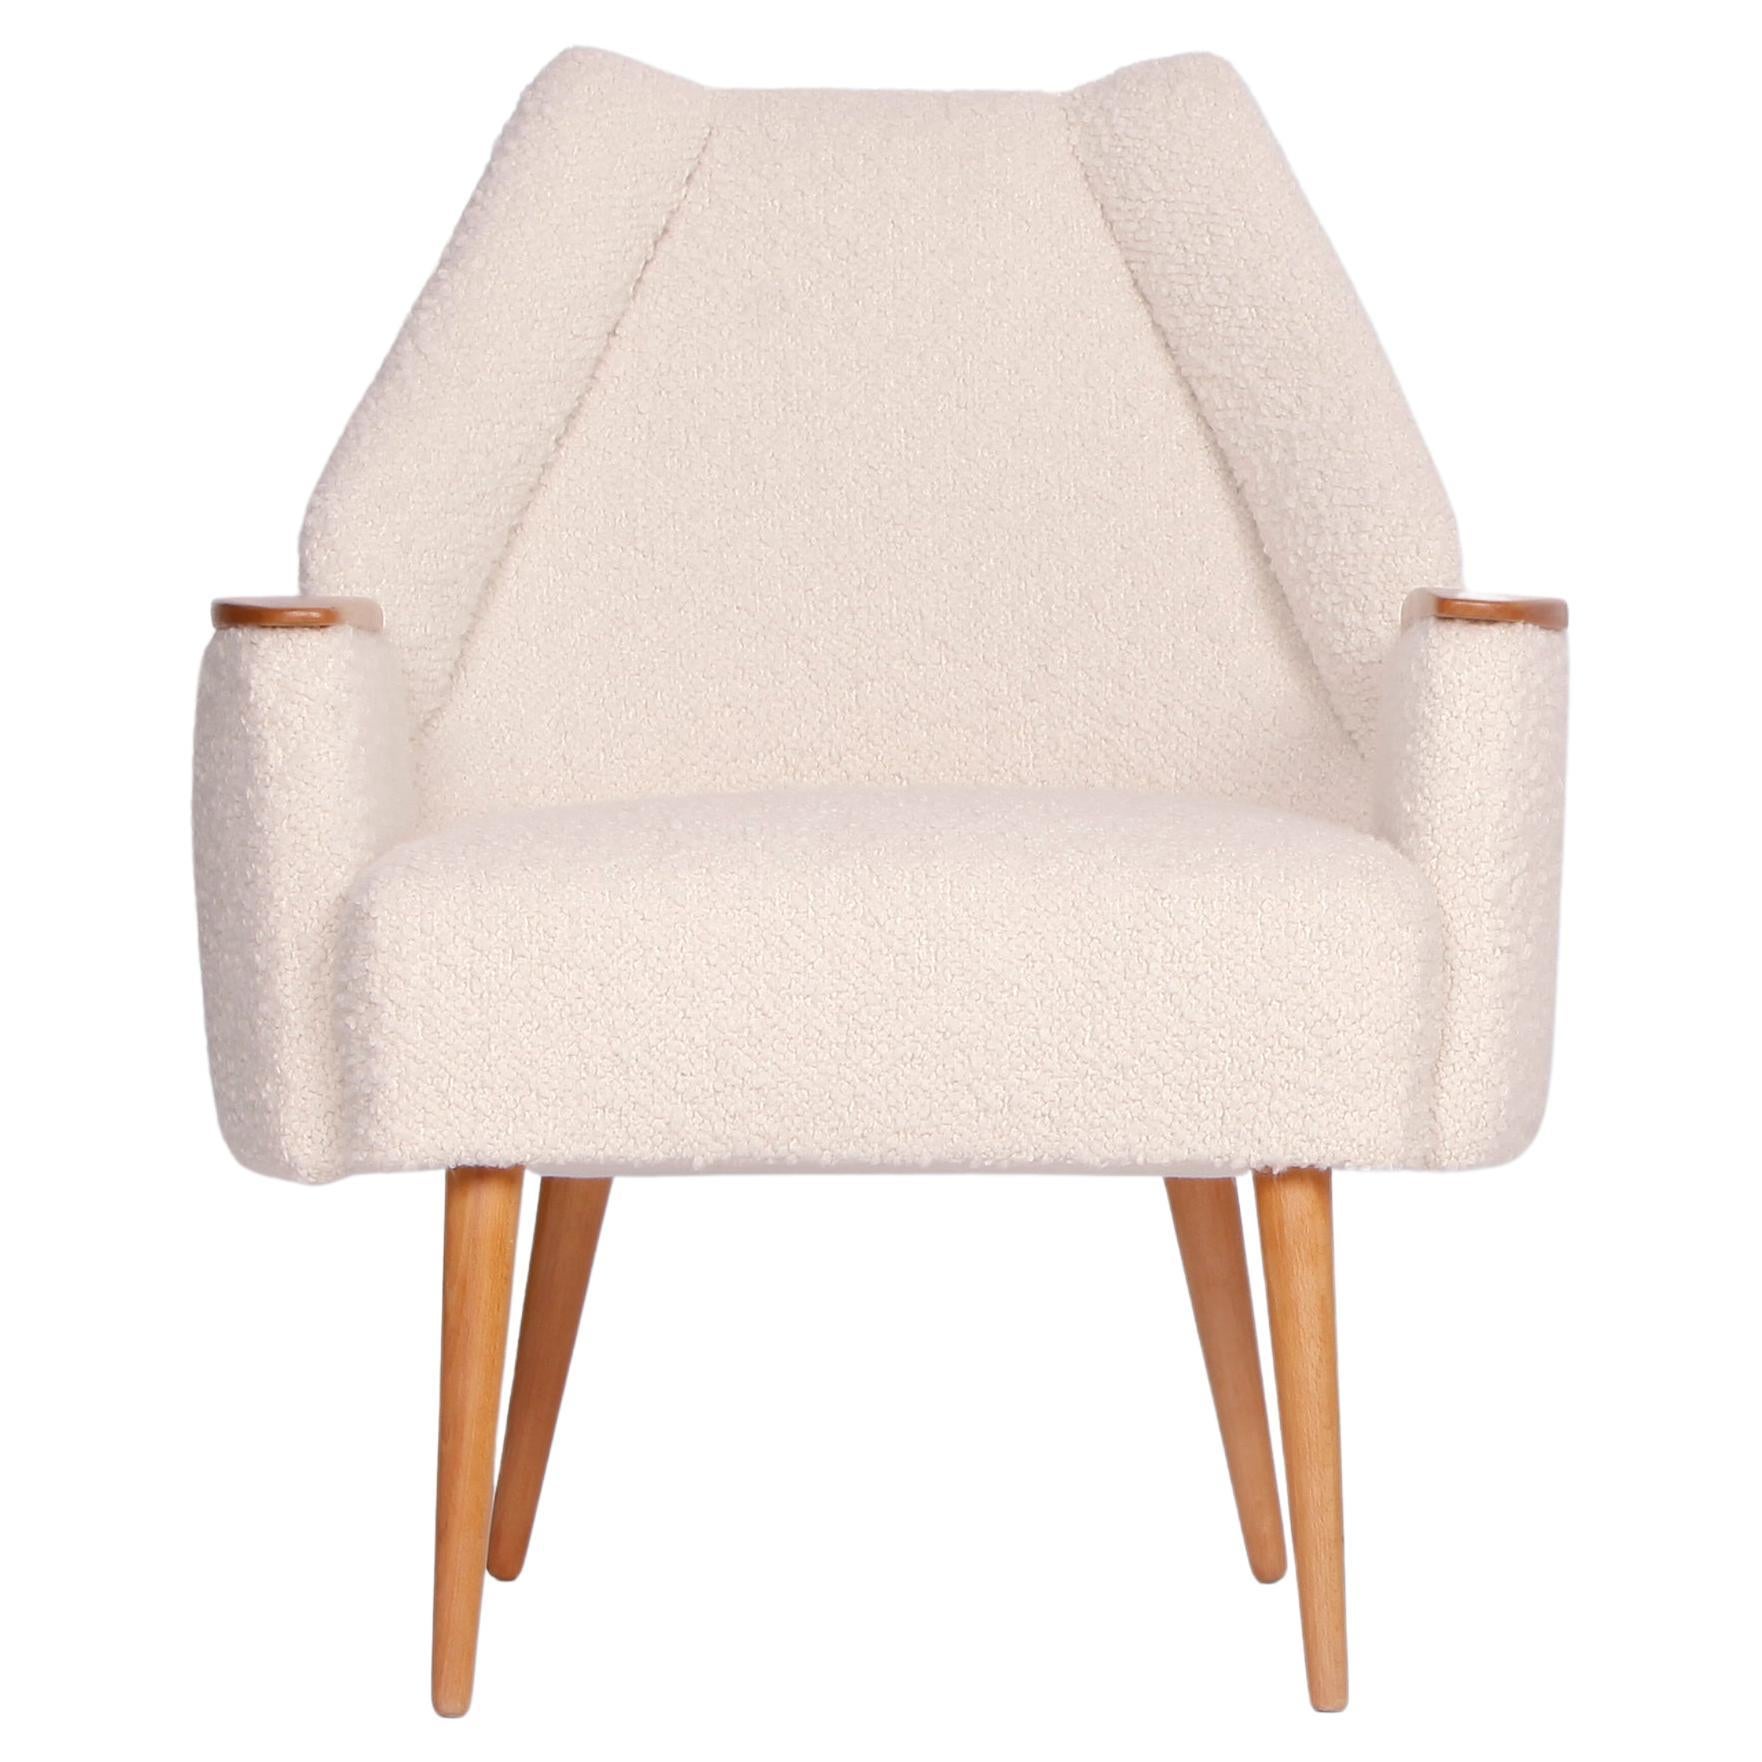 Diese Sessel wurden in den 1960er Jahren hergestellt. Sie wurden vollständig restauriert, einschließlich neuer Federn für die Polsterung. Für den Bezug haben wir einen wunderbar passenden Boucle-Stoff aus feiner englischer Wolle gewählt. Dieses